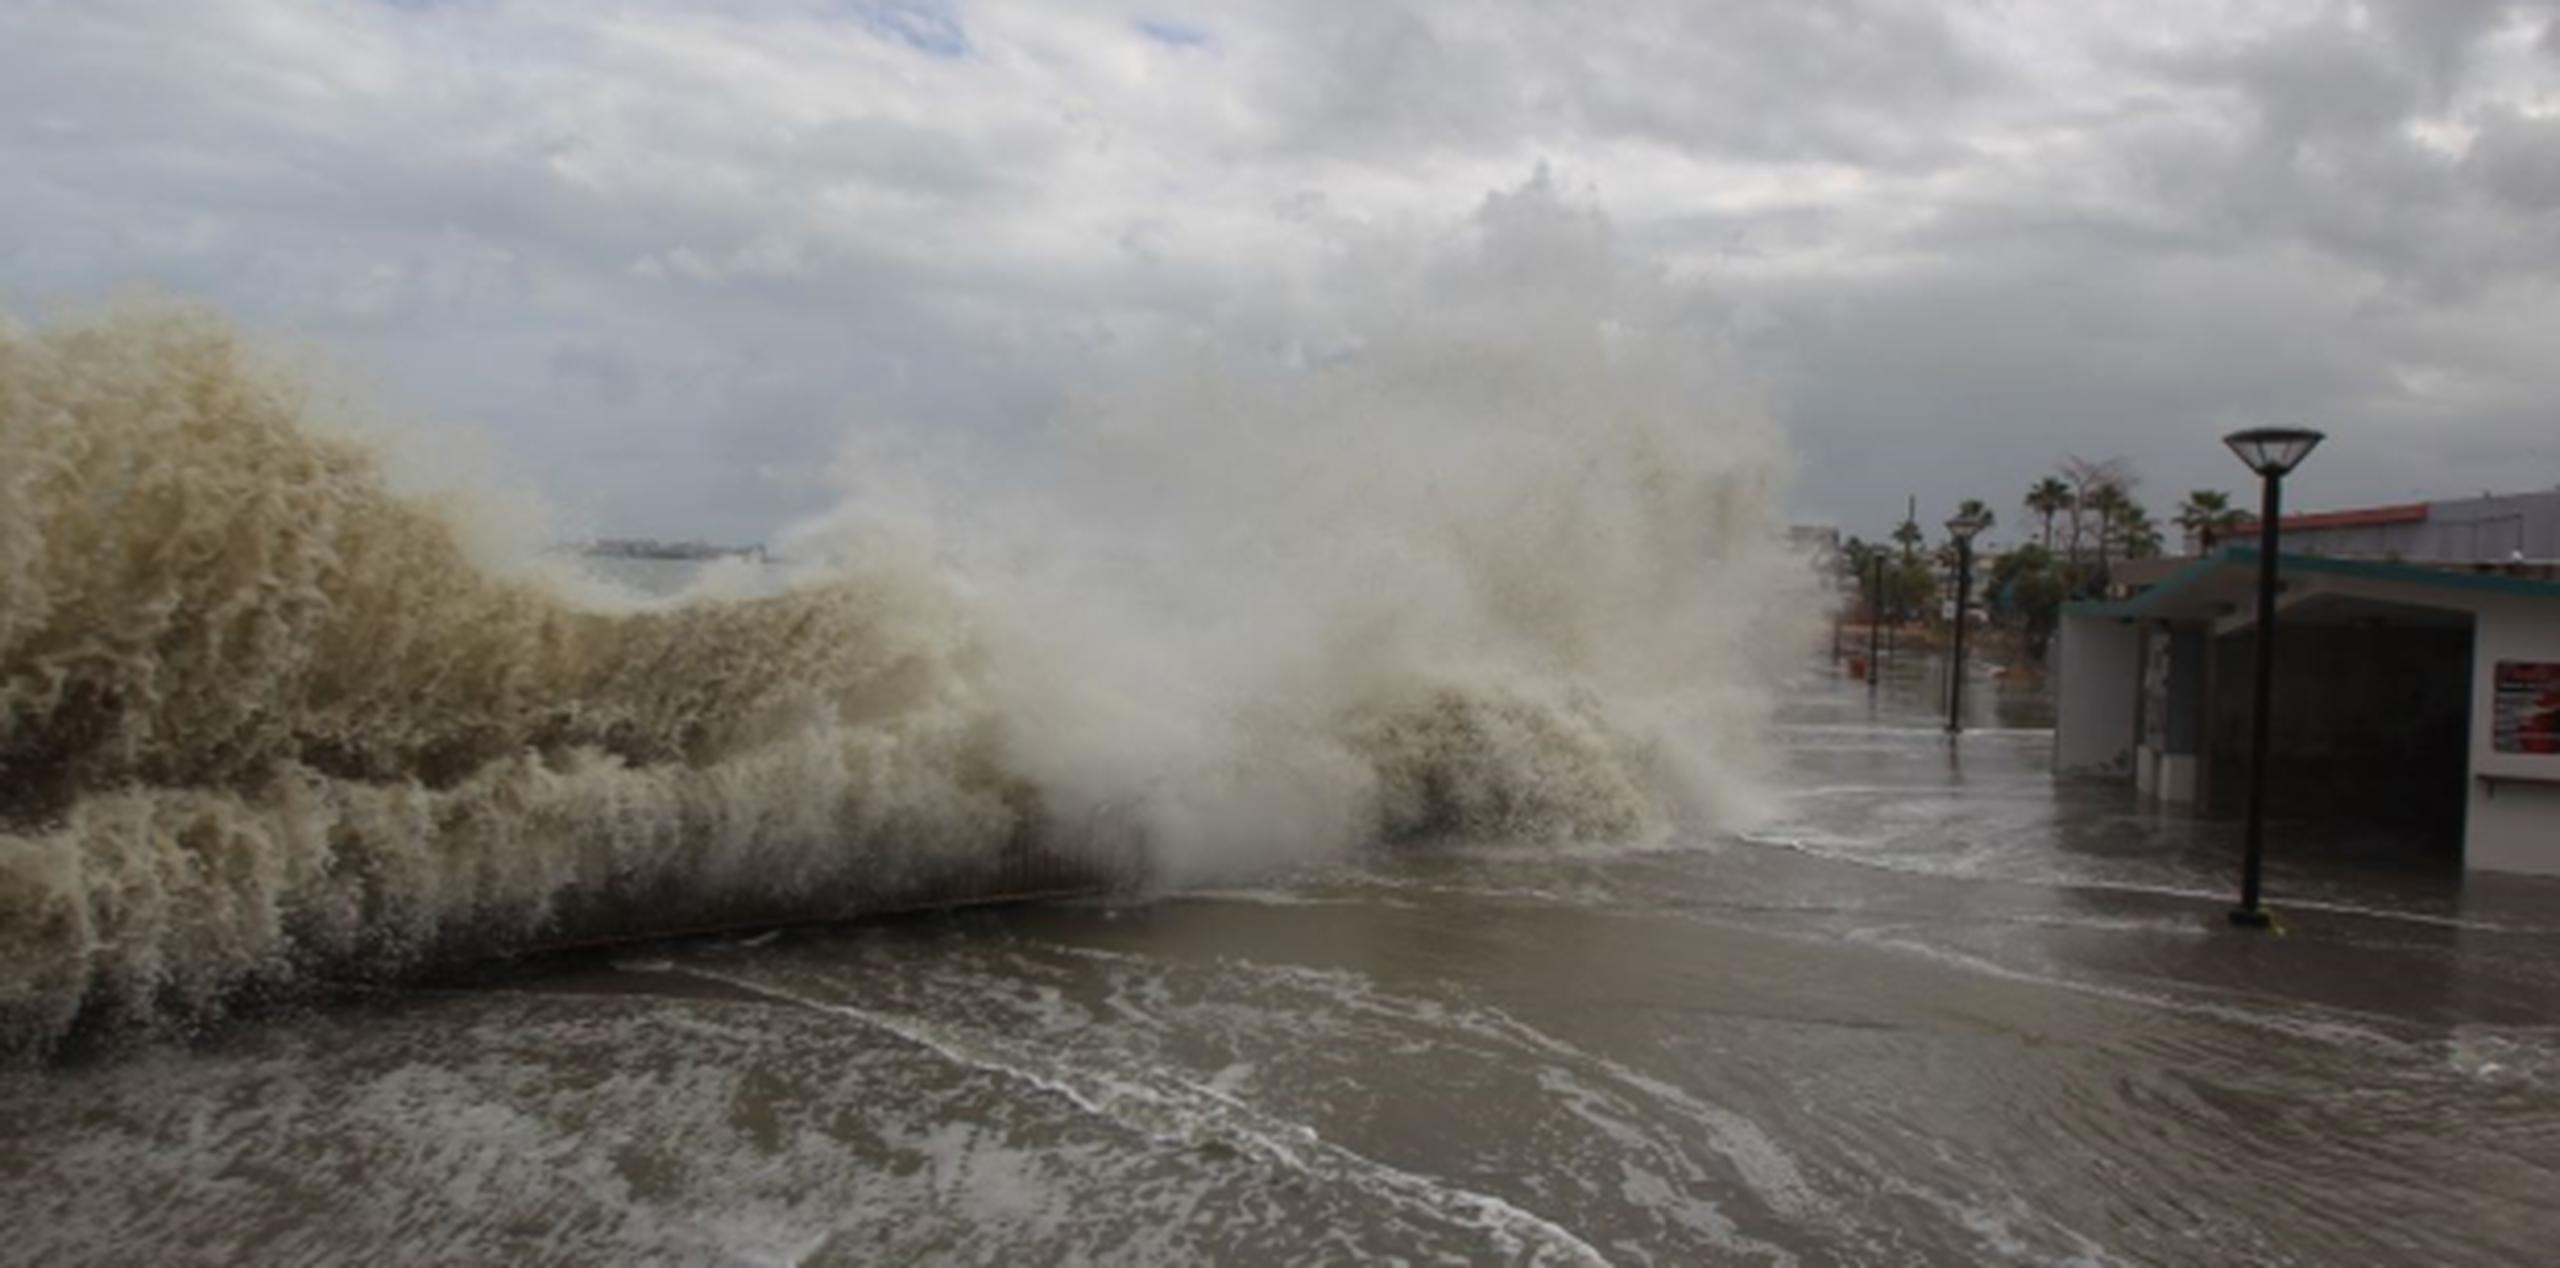 Según había anticipado el Servicio Nacional de Meteorología, se espera que las marejadas continúen por lo menos hasta mañana miércoles. (alex.figueroa@gfrmedia.com)